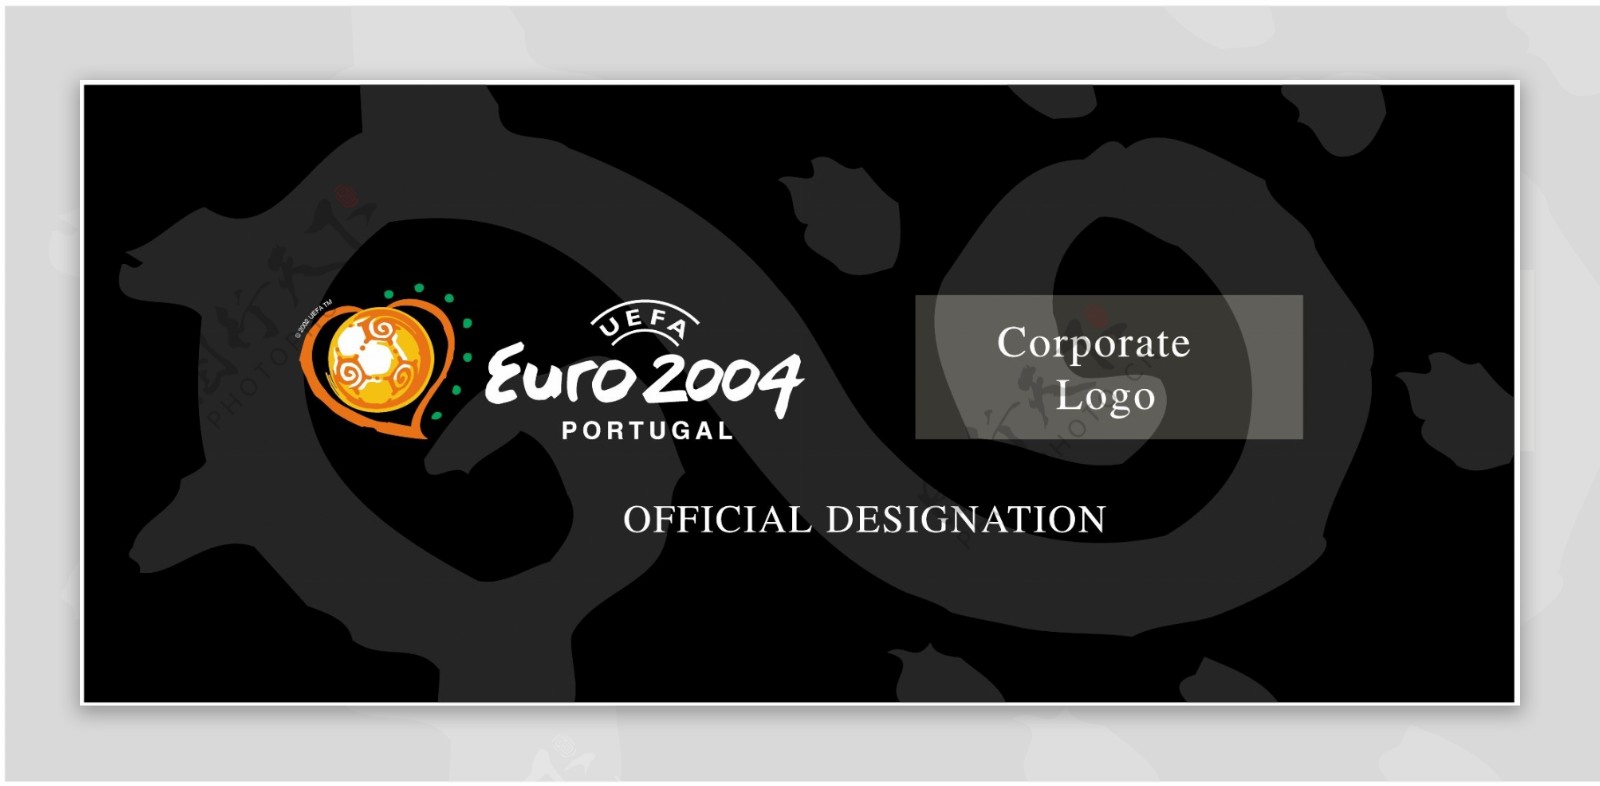 欧洲杯2004葡萄牙49